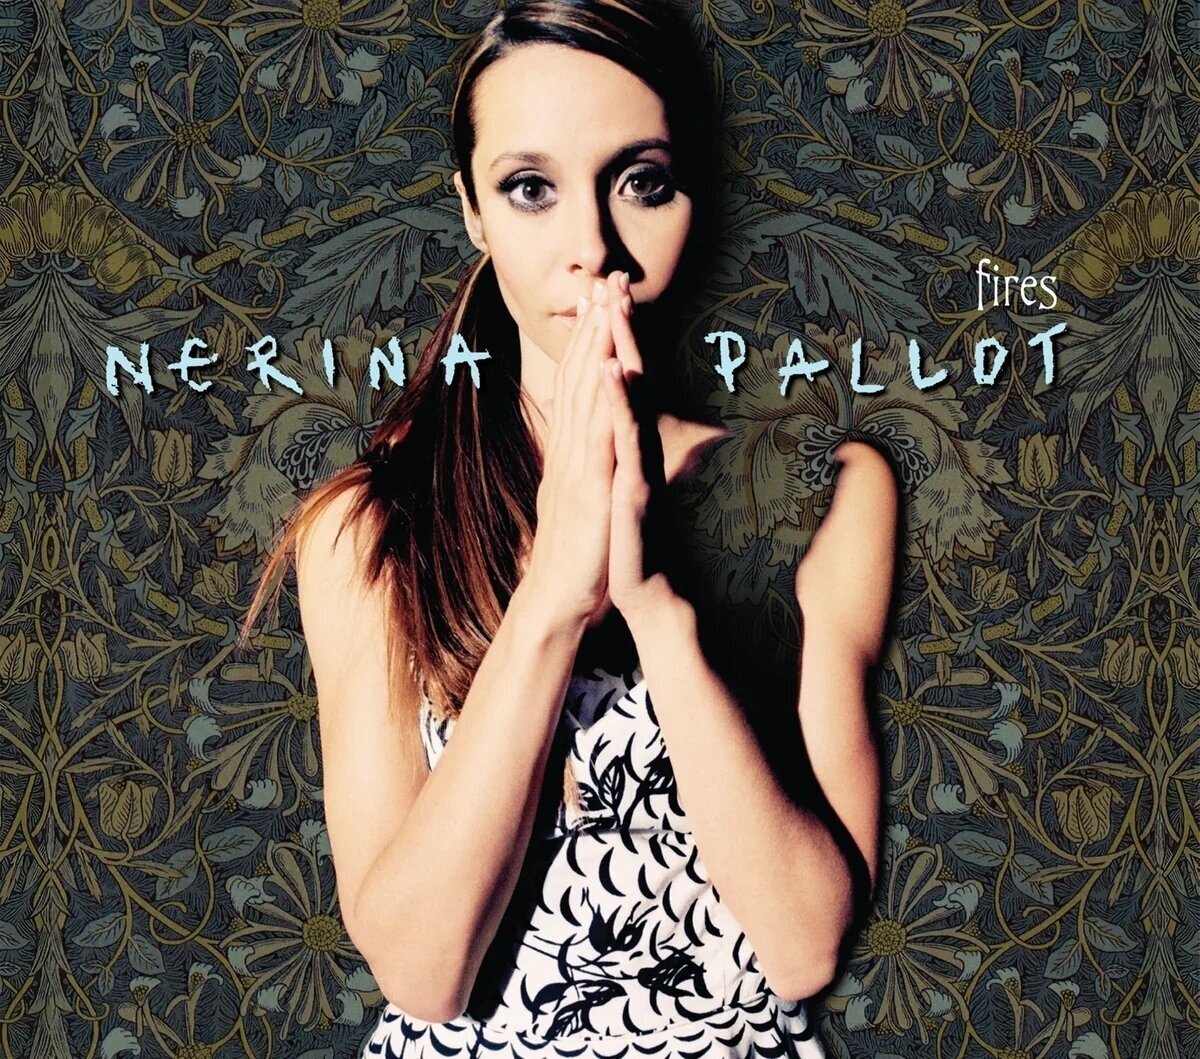 Schallplatte Nerina Pallot -Fires (180g) (High Quality) (Gatefold Sleeve) (LP)